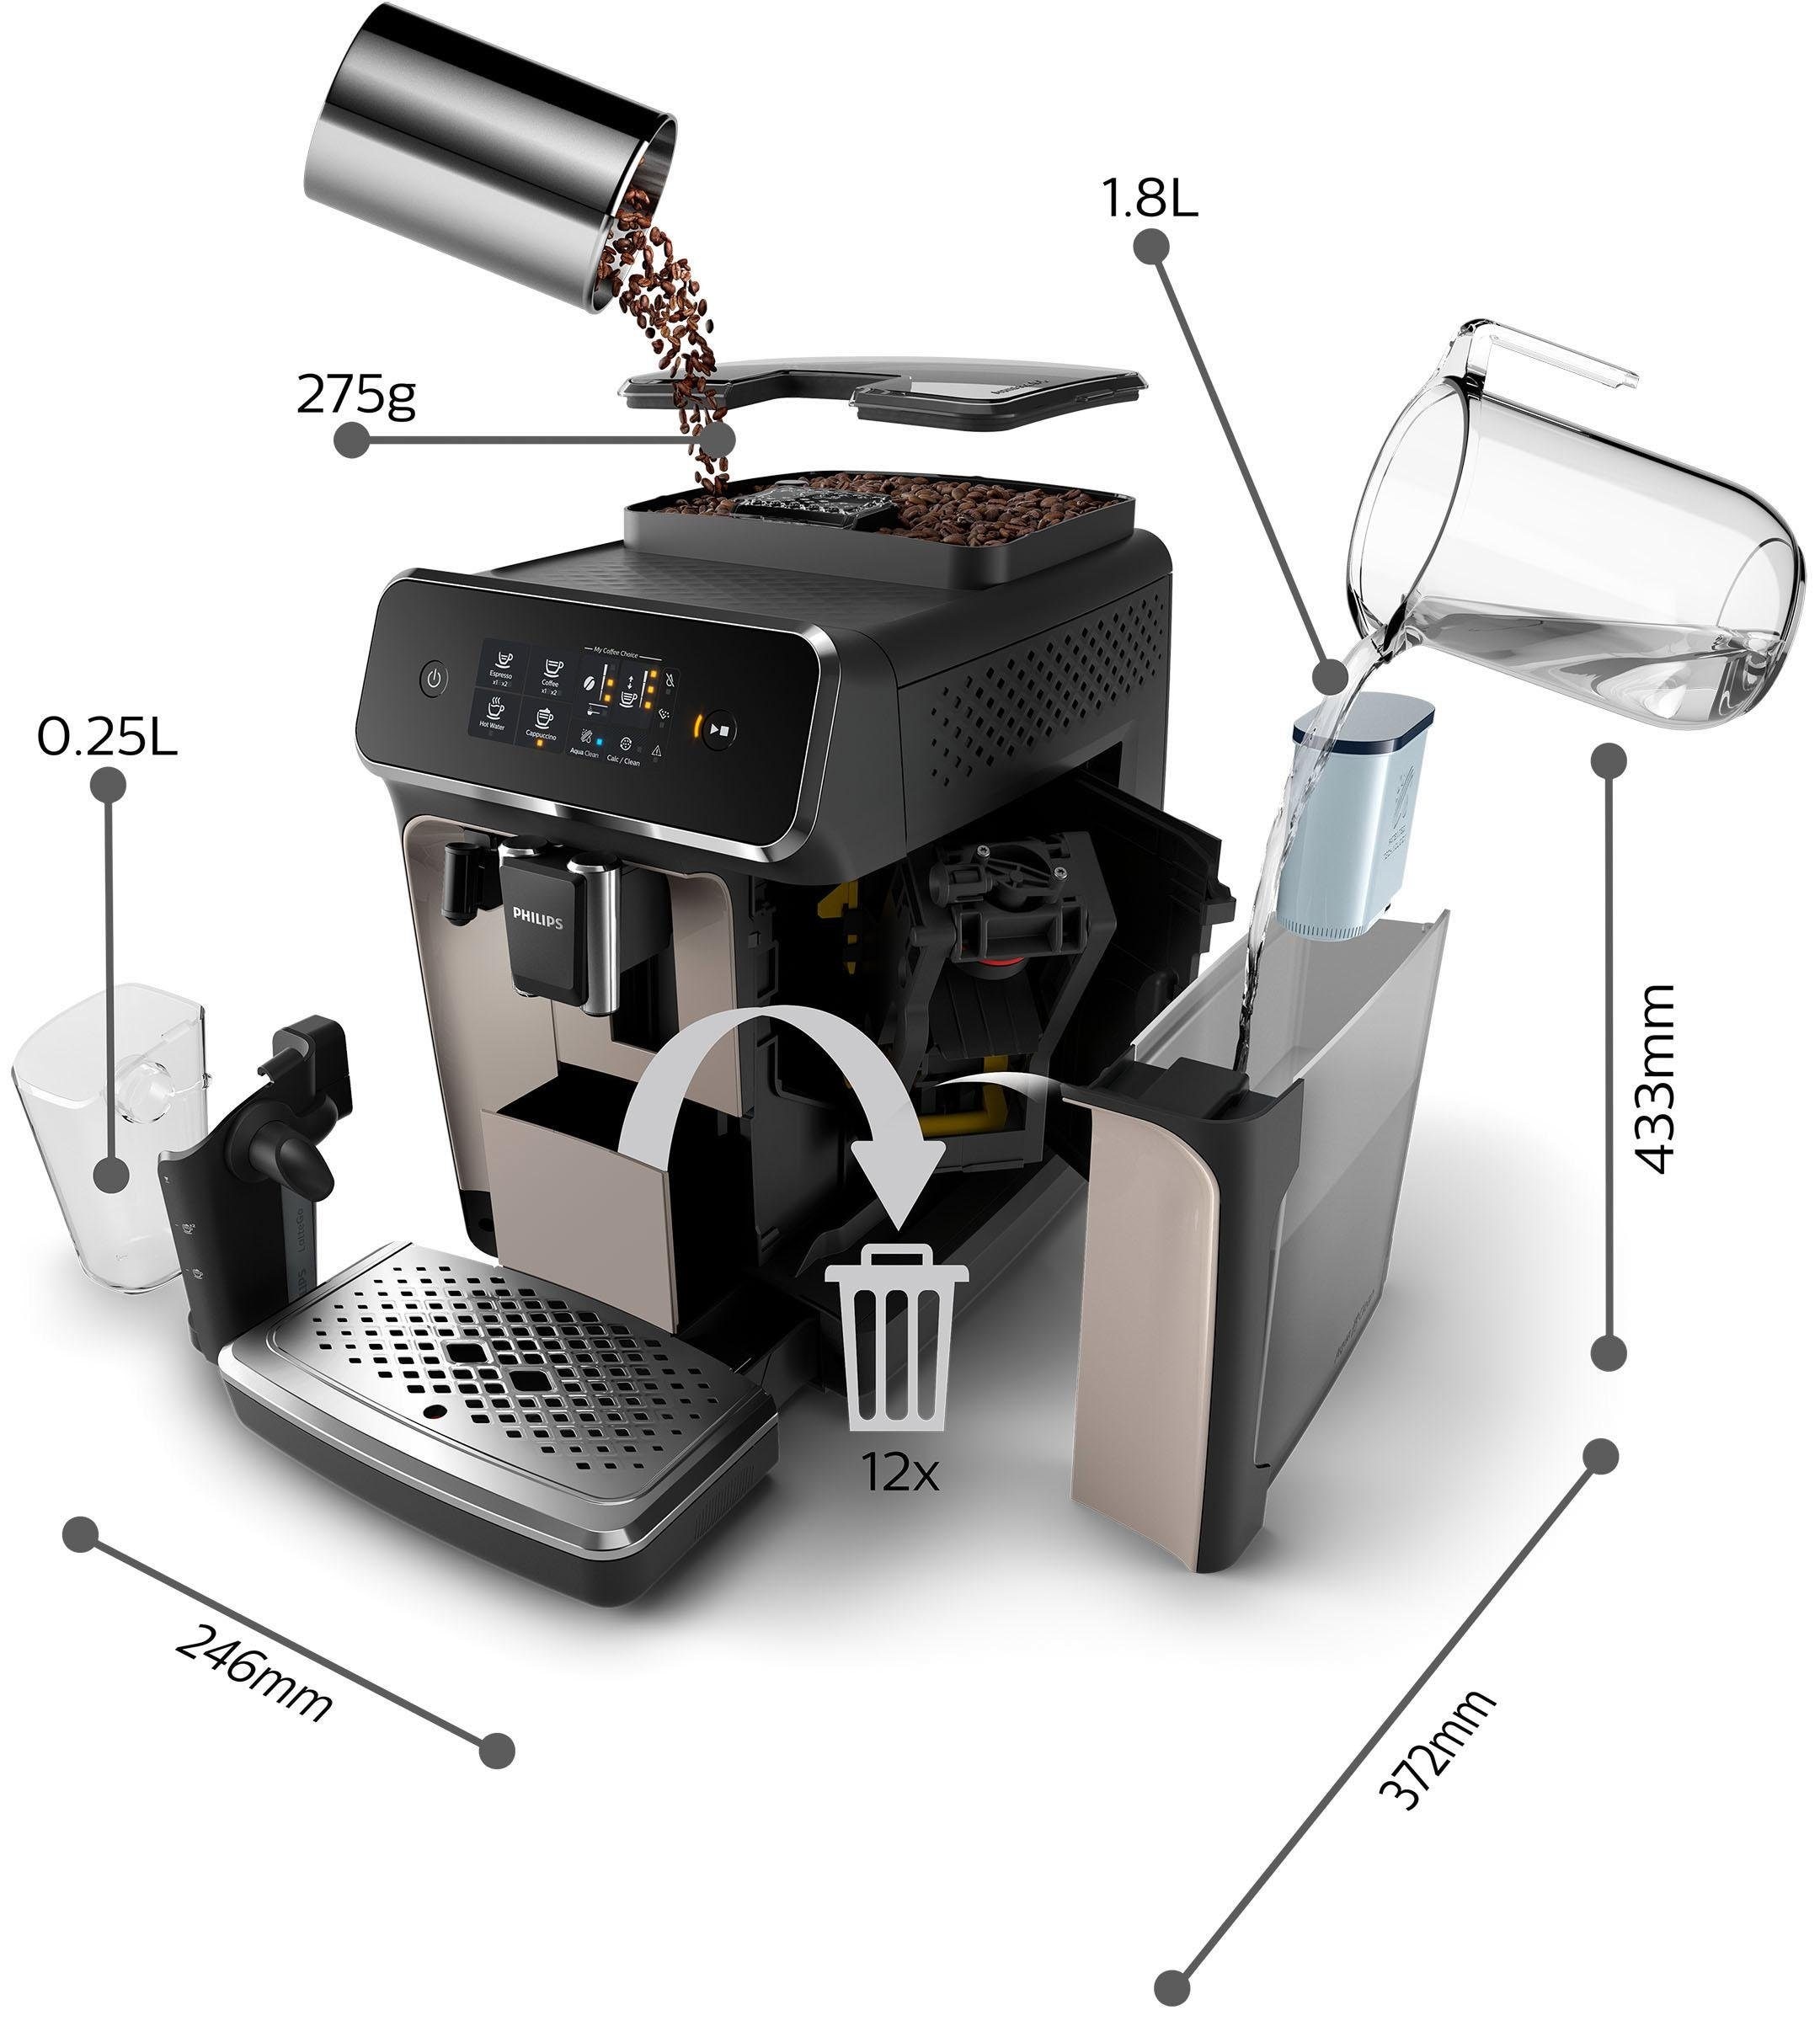 Philips Kaffeevollautomat »2200 Serie EP2236/40 LatteGo«, für 3 Kaffeespezialitäten und anpassbarer Stärke, matt-schwarz